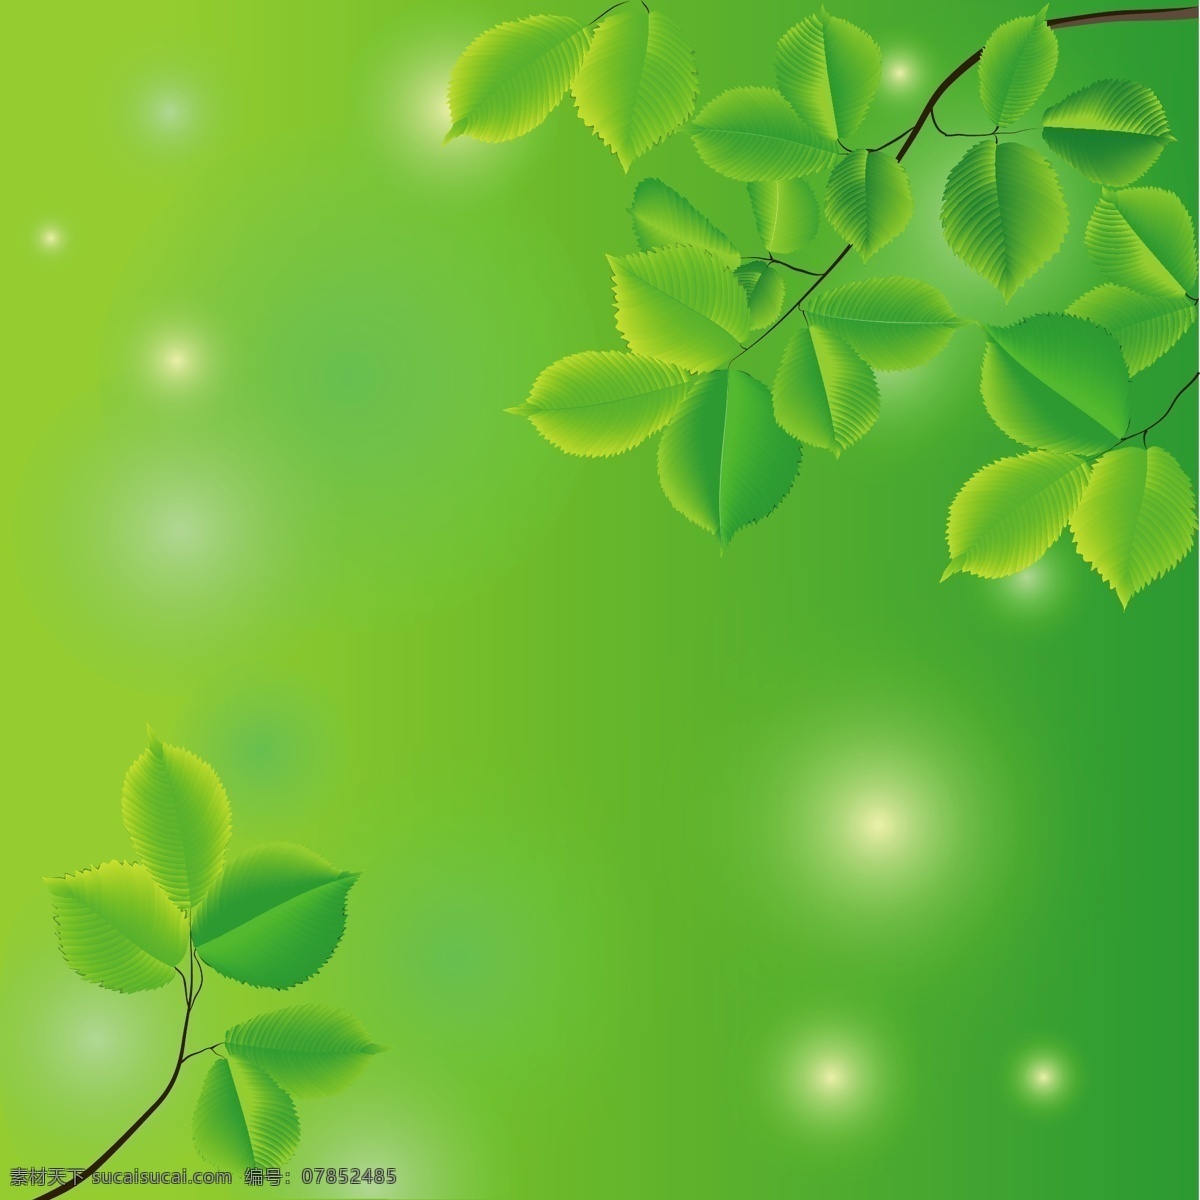 绿色树叶背景 绿色 树叶 叶子 绿色背景 背景图案 背景模板 底纹边框 矢量素材